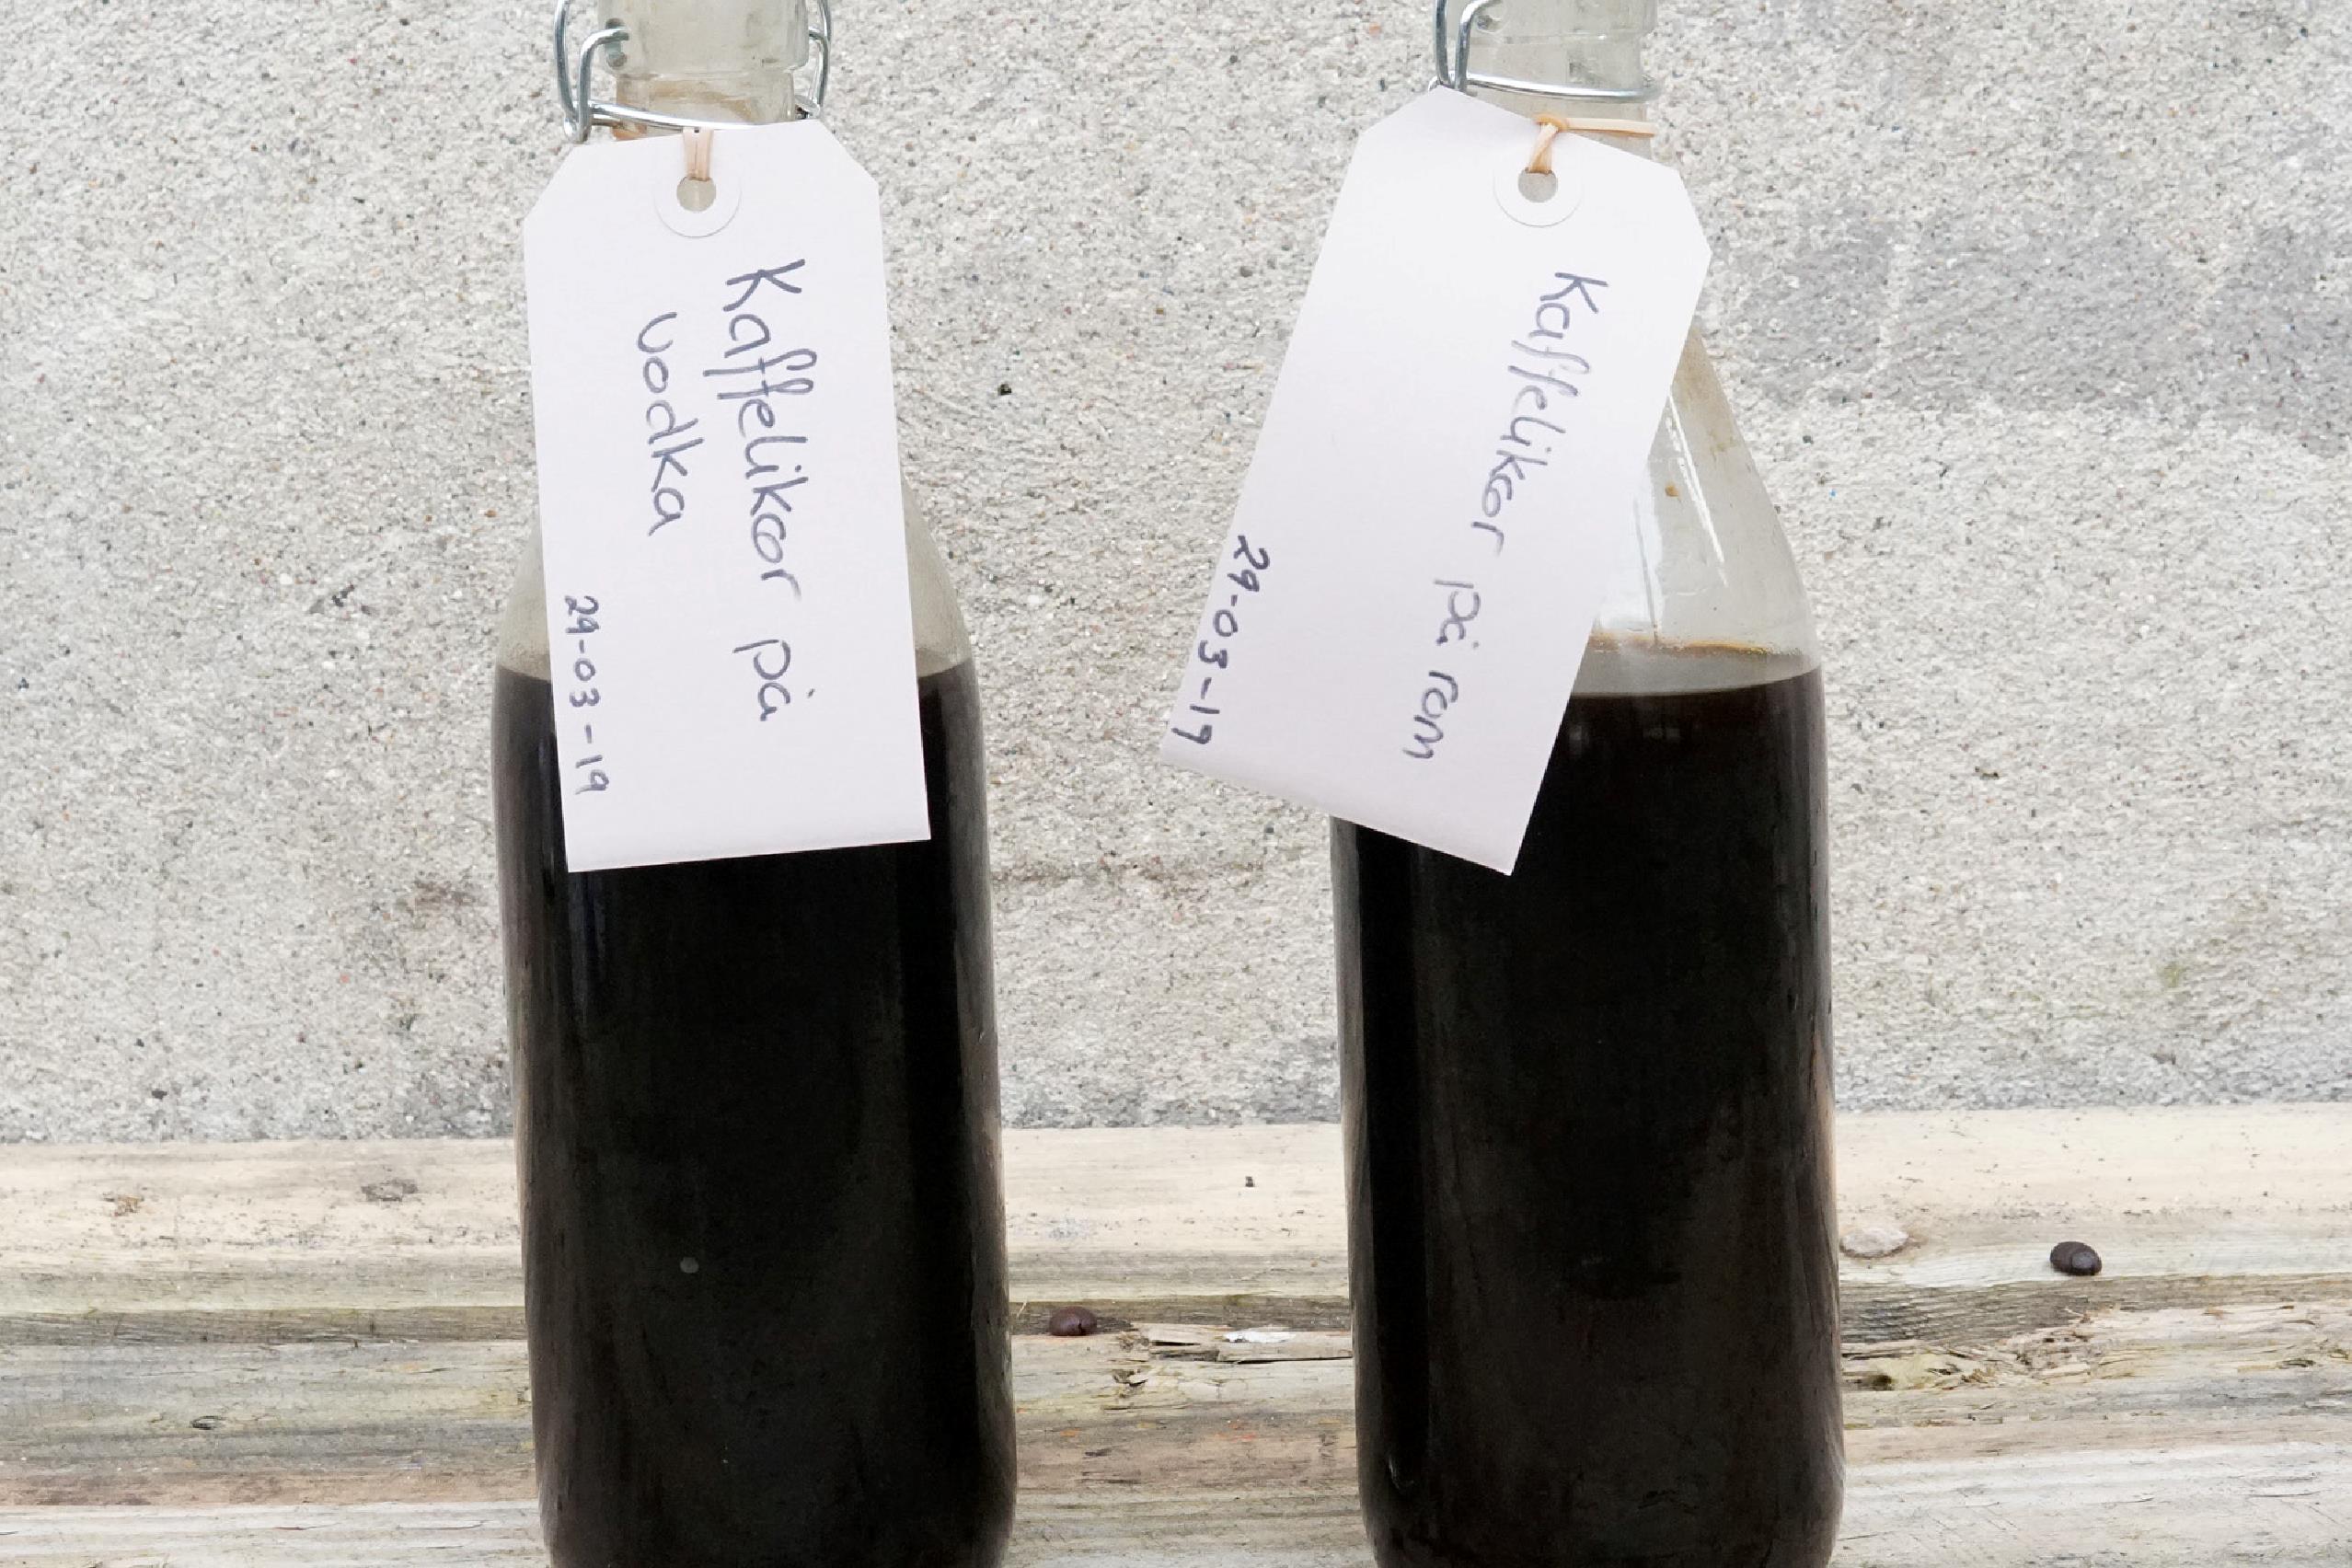 Billede af to flasker kaffelikør